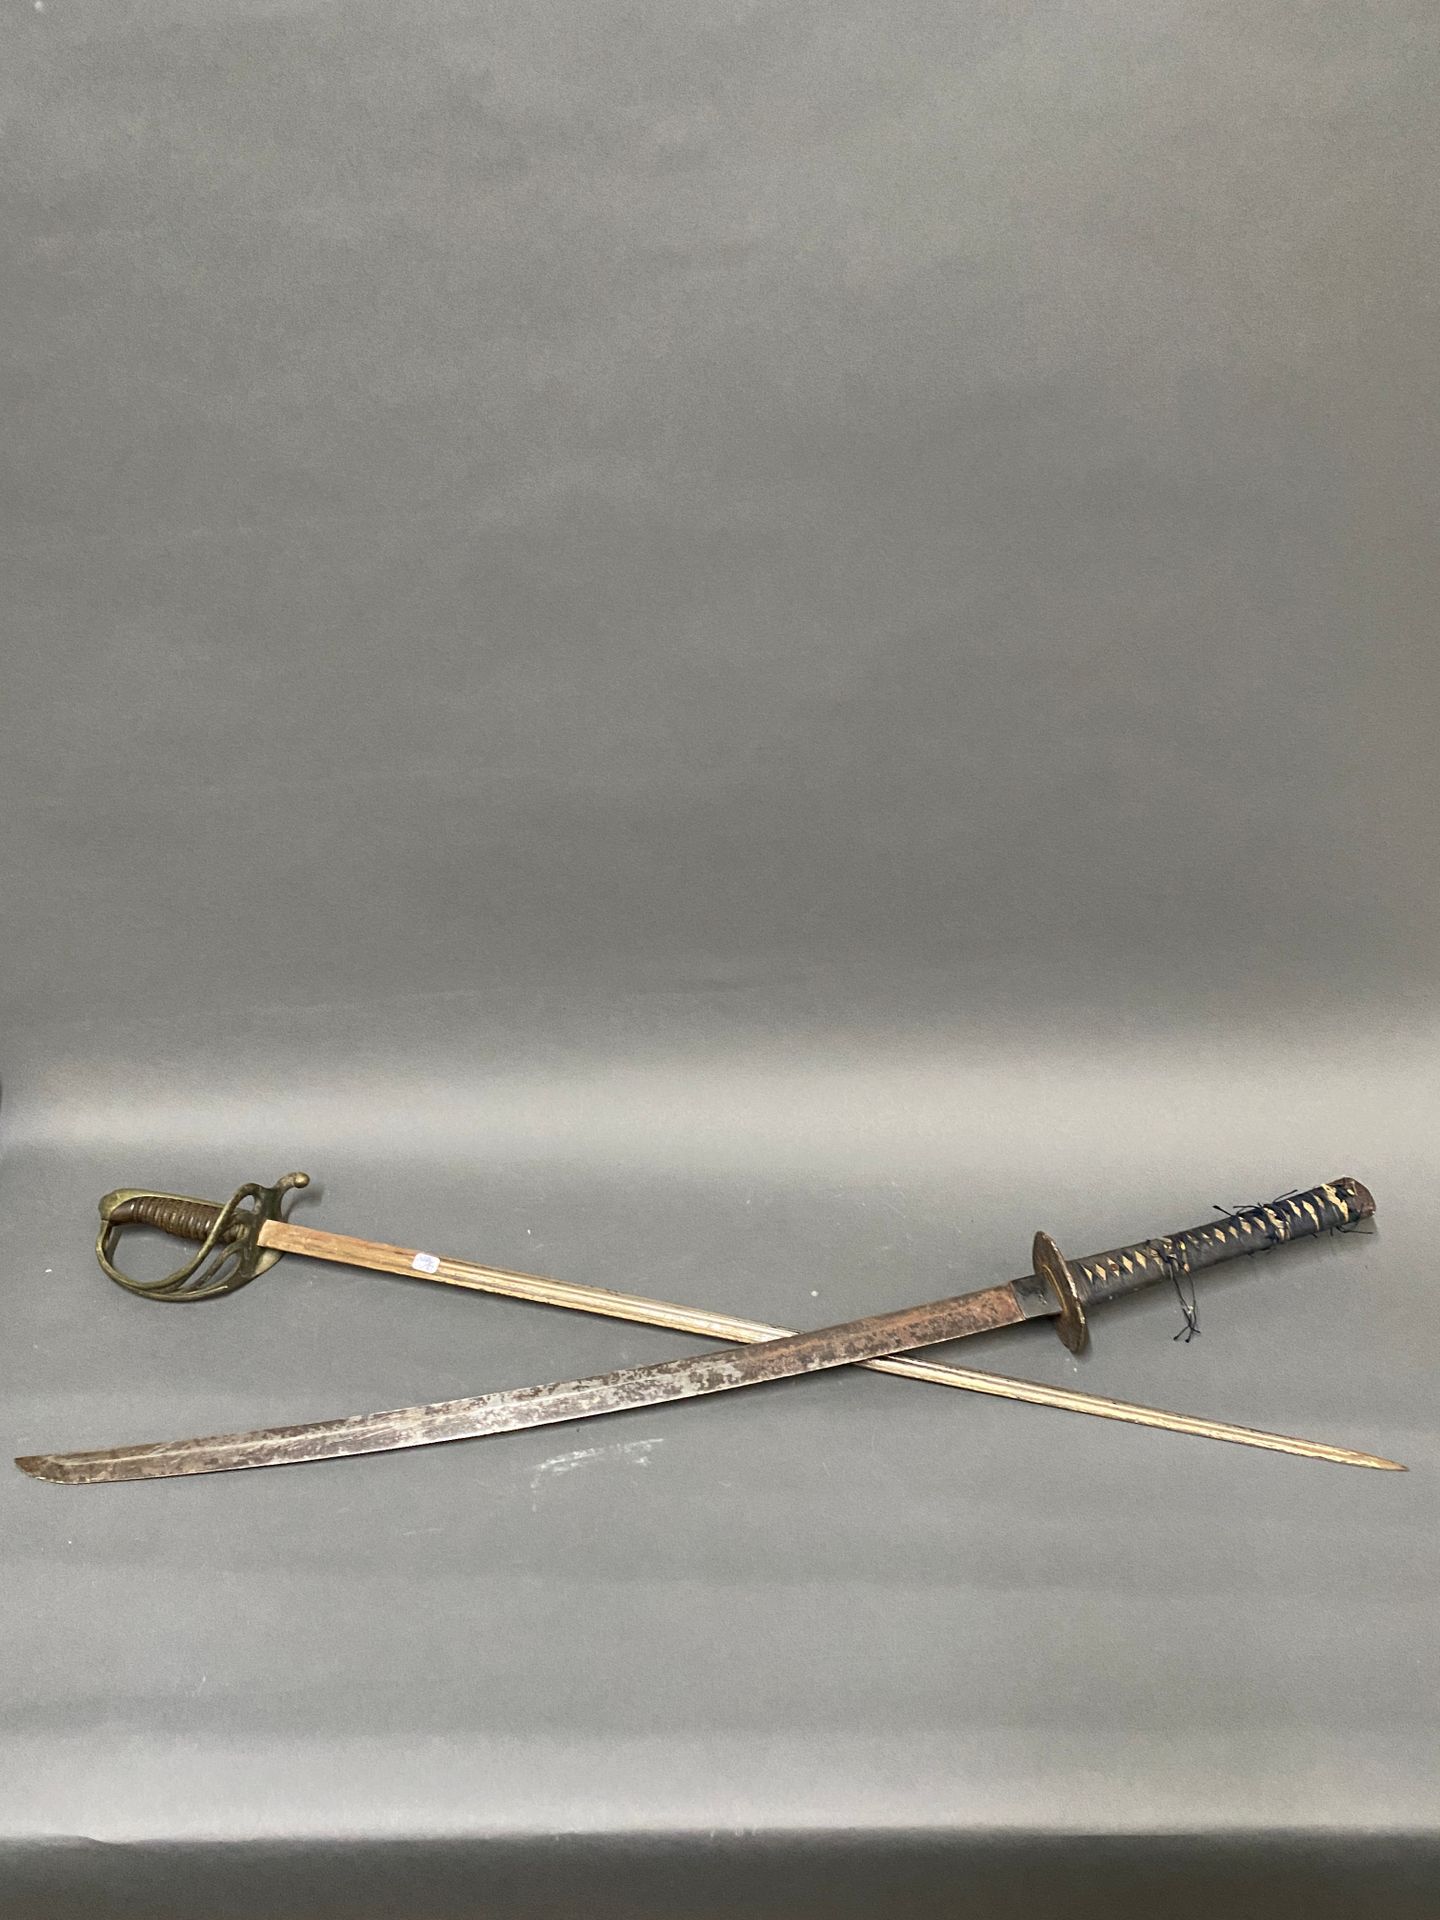 Null 日本刀（不含刀鞘）

19世纪